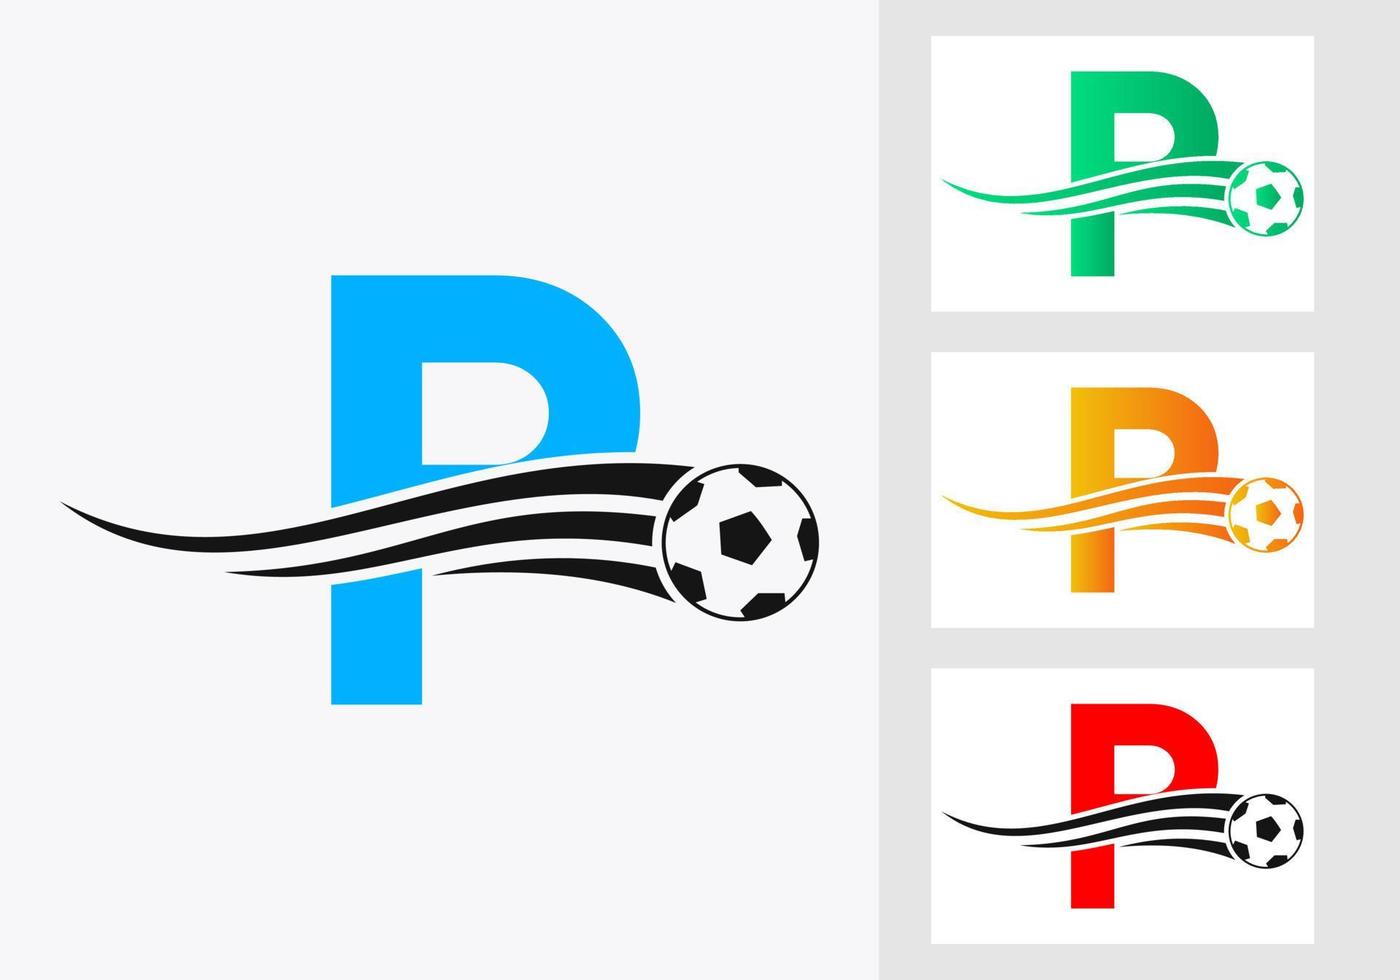 logo de football de football sur le signe de la lettre p. concept d'emblème de club de football d'icône d'équipe de football vecteur